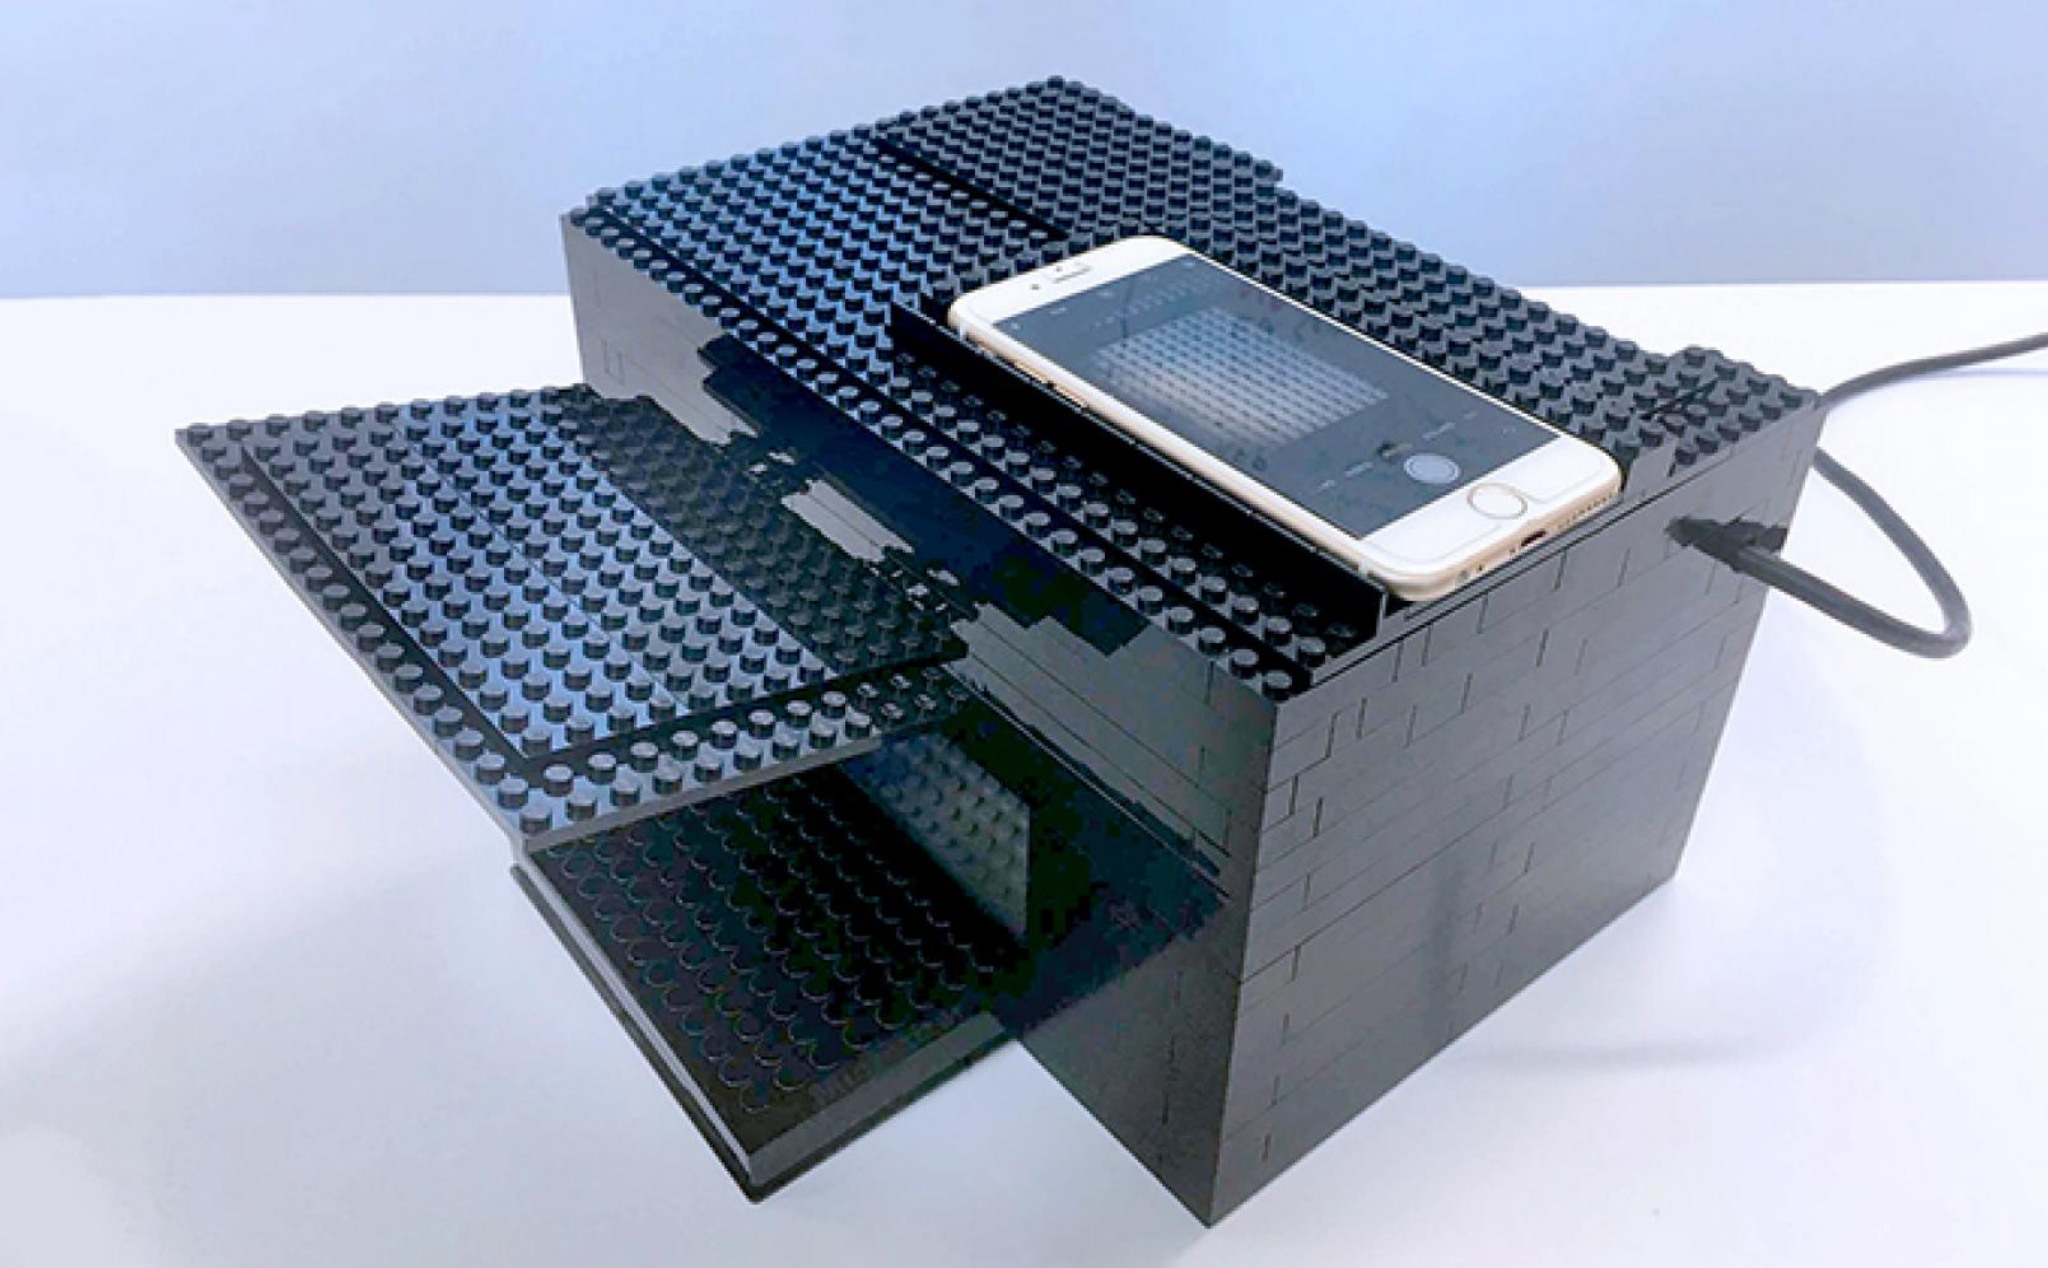 Kết hợp smartphone và khung máy làm từ Lego để nhận biết dấu hiệu của vũ khí sinh học